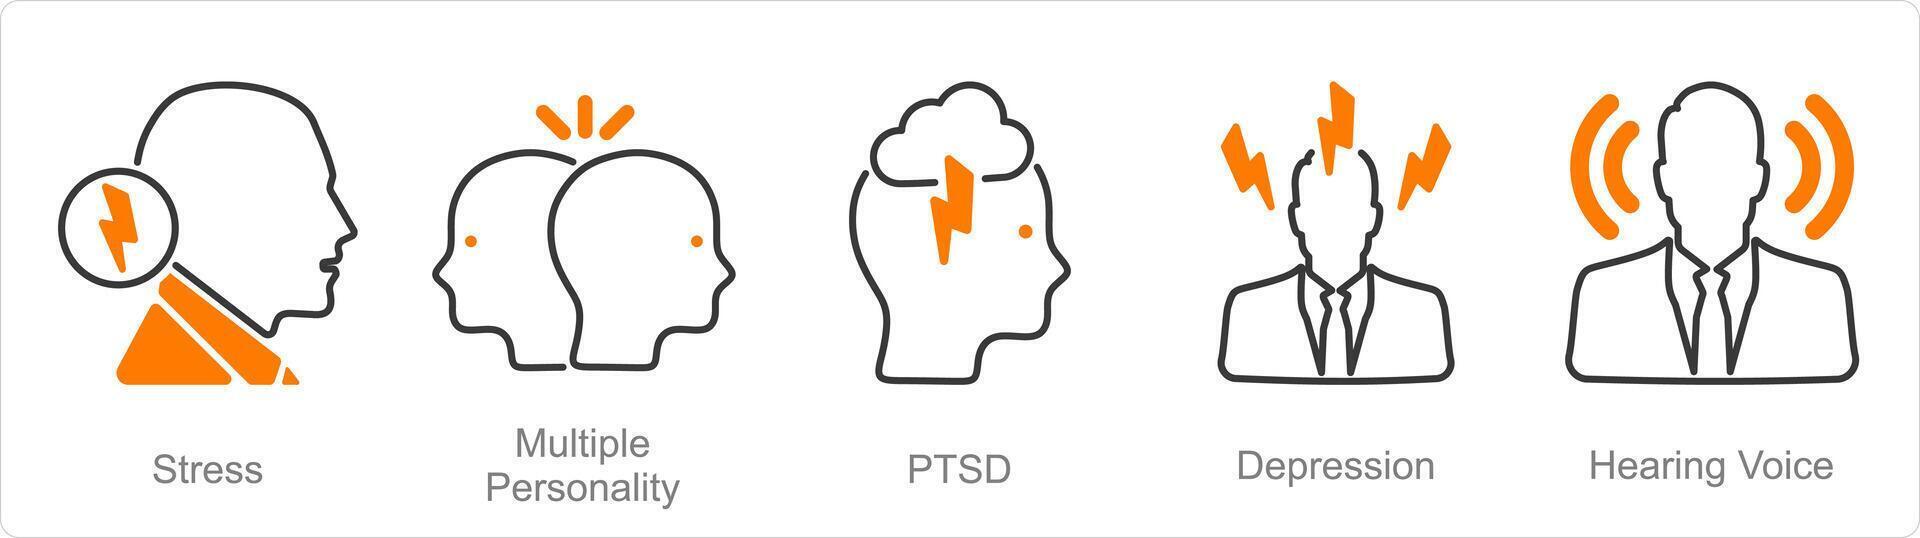 uma conjunto do 5 mental saúde ícones Como estresse, múltiplo personalidade, ptsd vetor